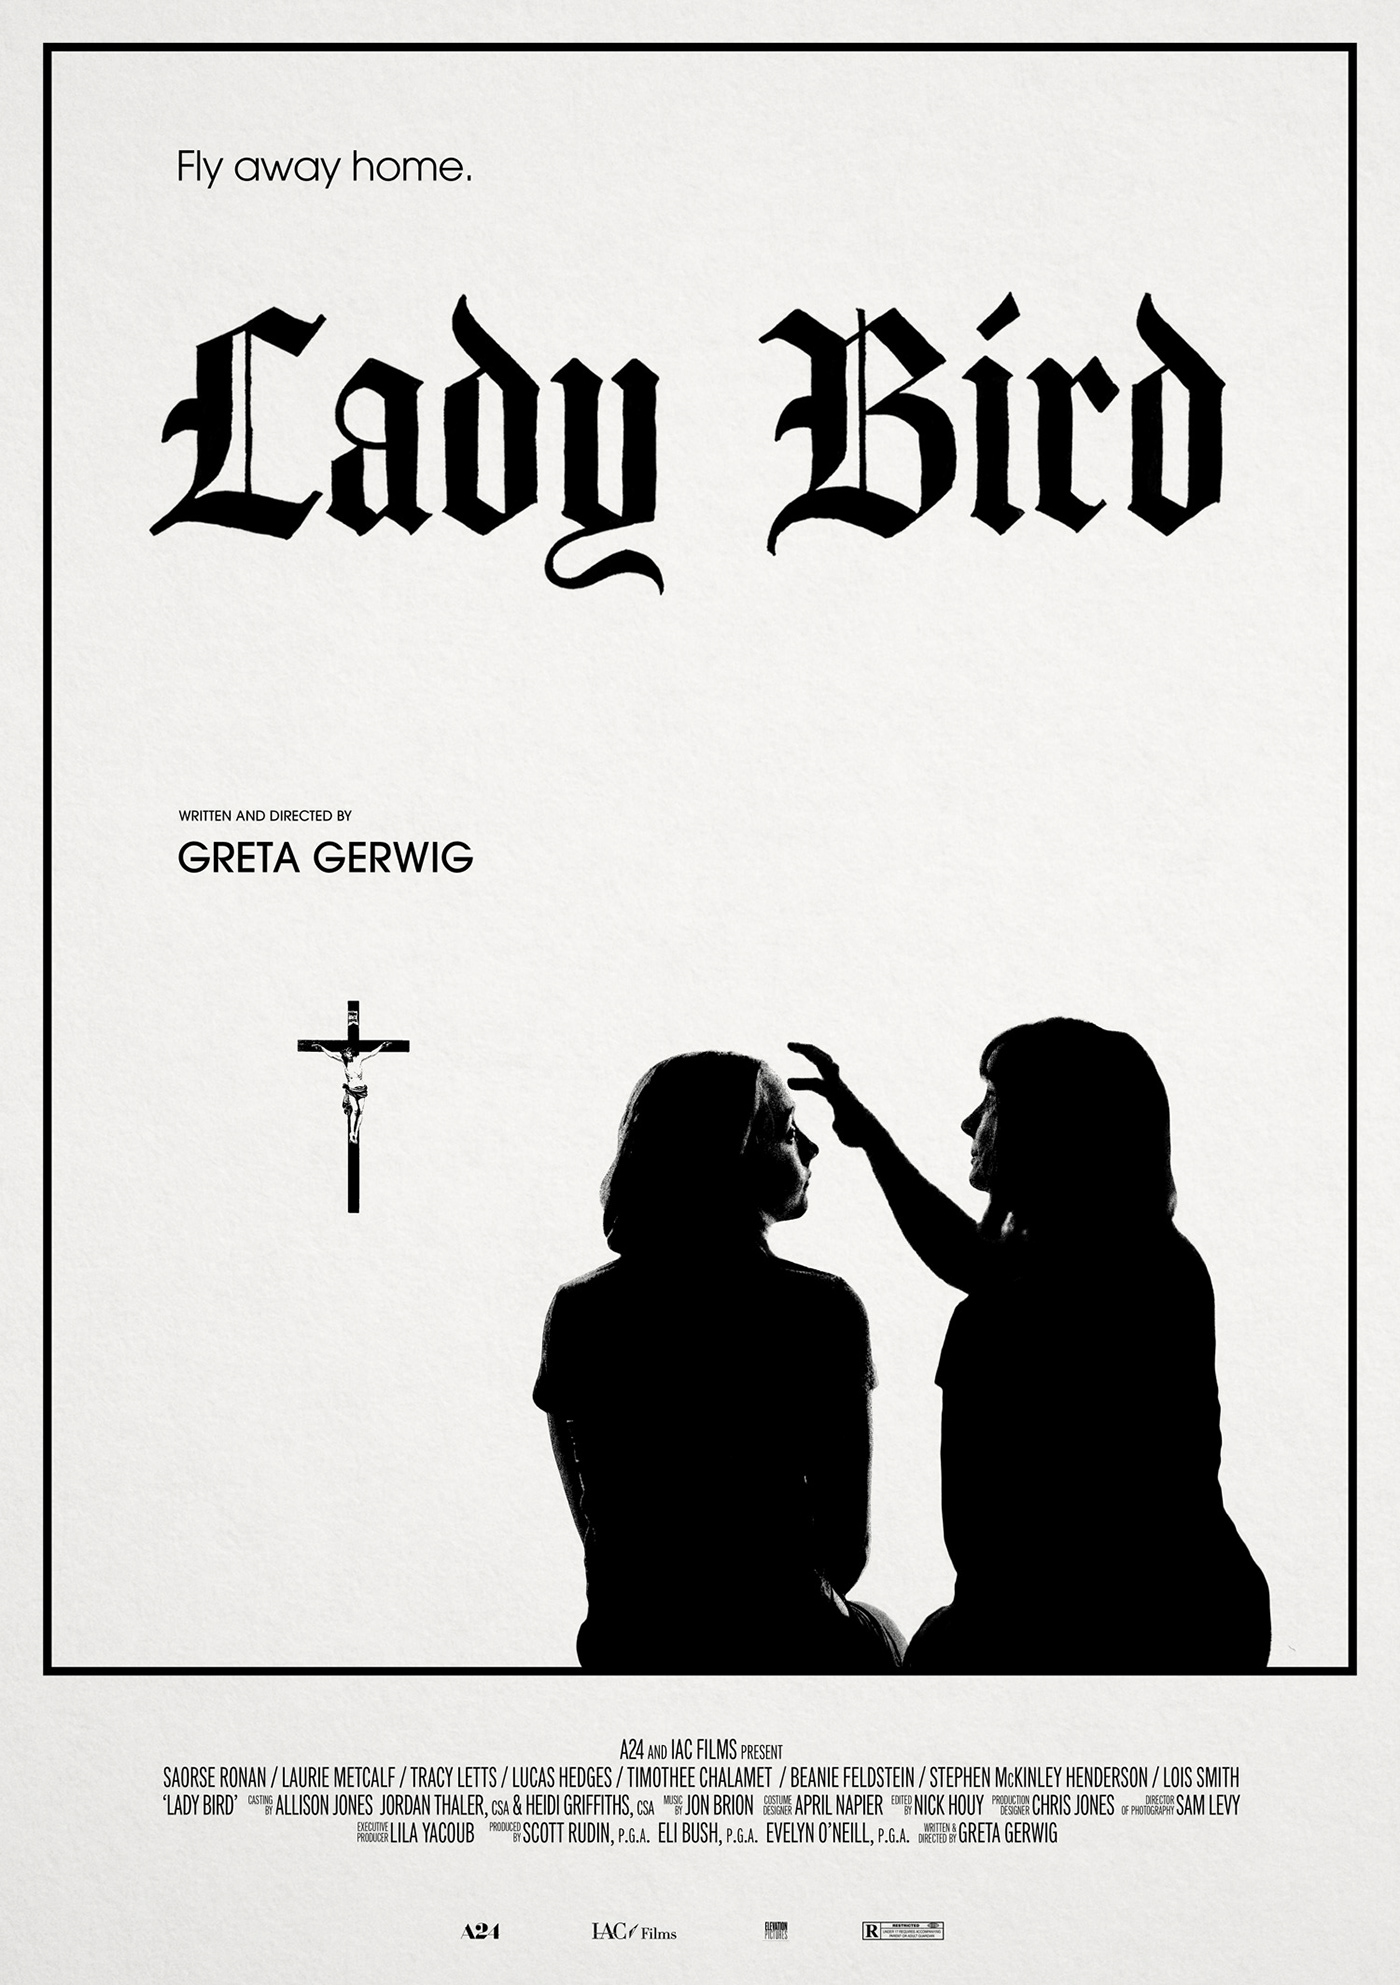 alternative black and white design Greta Gerwig lady bird Noah Baumbach poster soarse ronan timothee chalamet